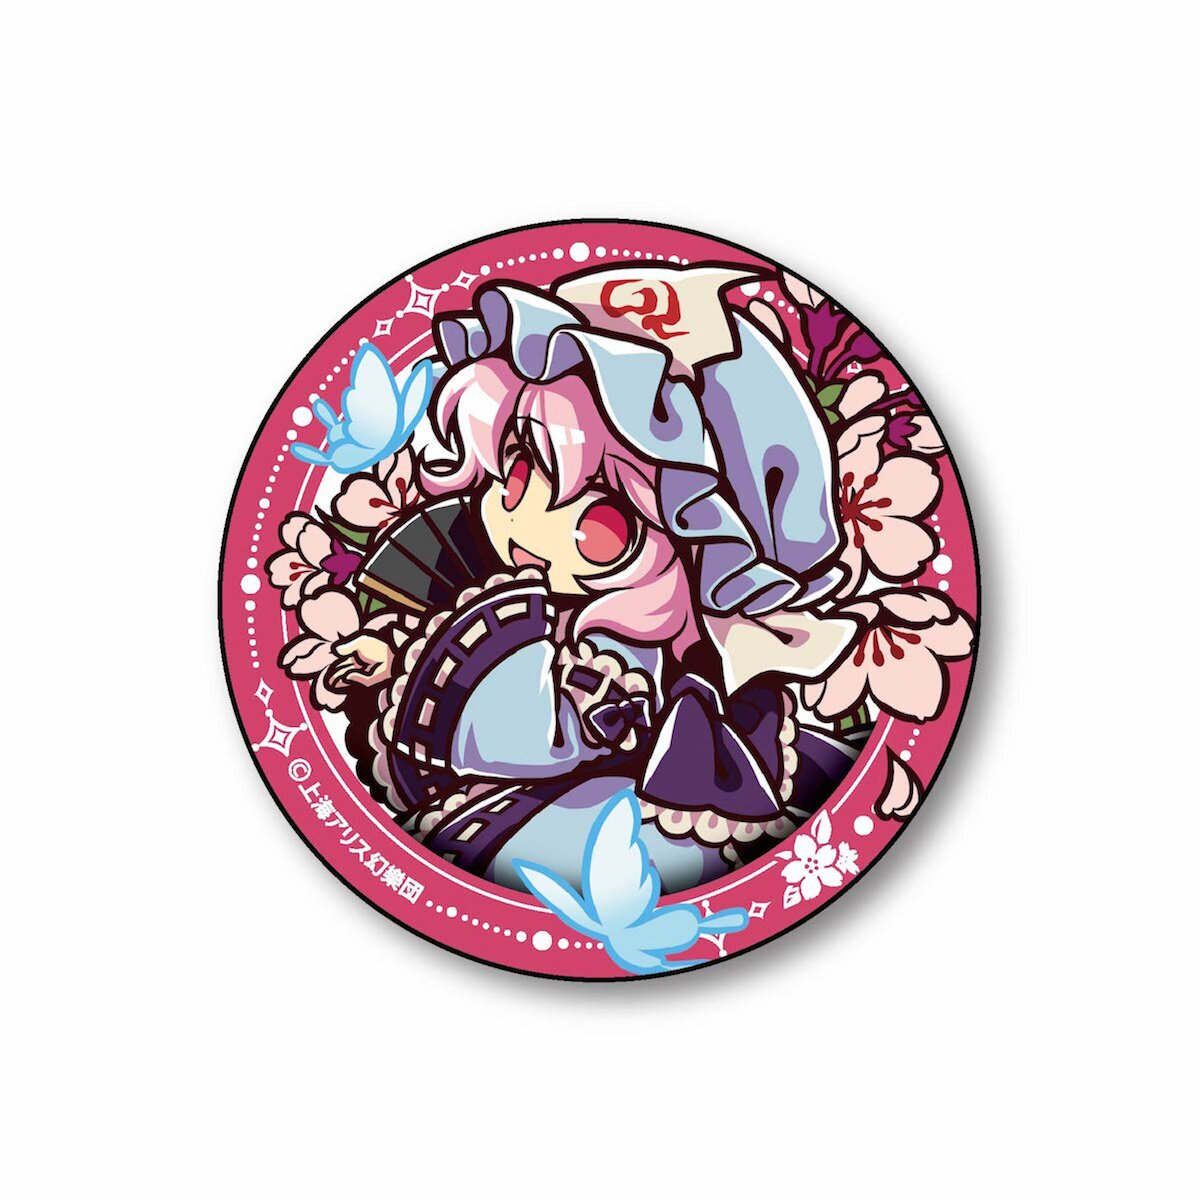 AmiAmi [Character & Hobby Shop]  MAGI Tin Badge Collection